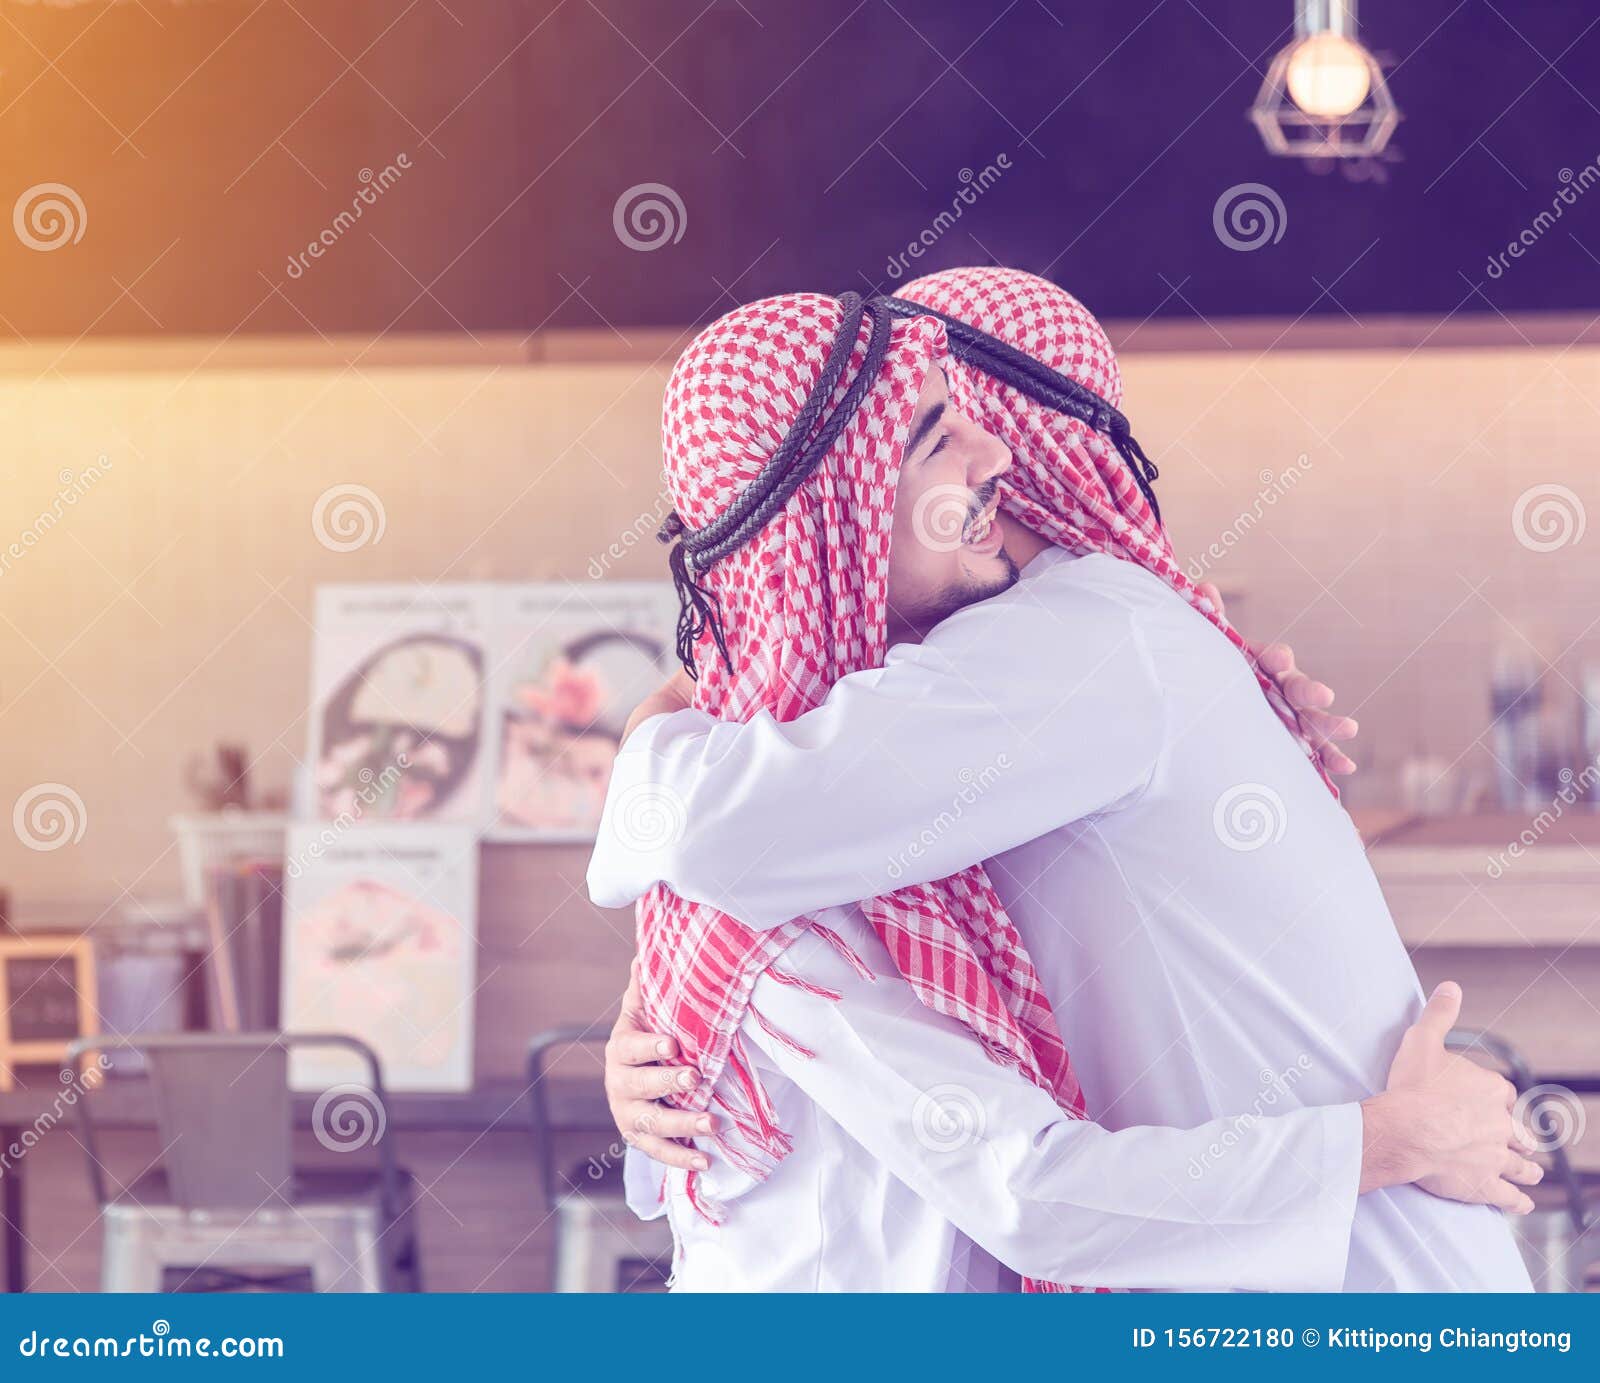 Twee Arabische Mannen Die Samen Zijn, Knuffelen En Glimlachen Als Ze Elkaar Toevallig Ontmoeten in Het & Restaurant Stock Foto - Image of kerel, aziatisch: 156722180